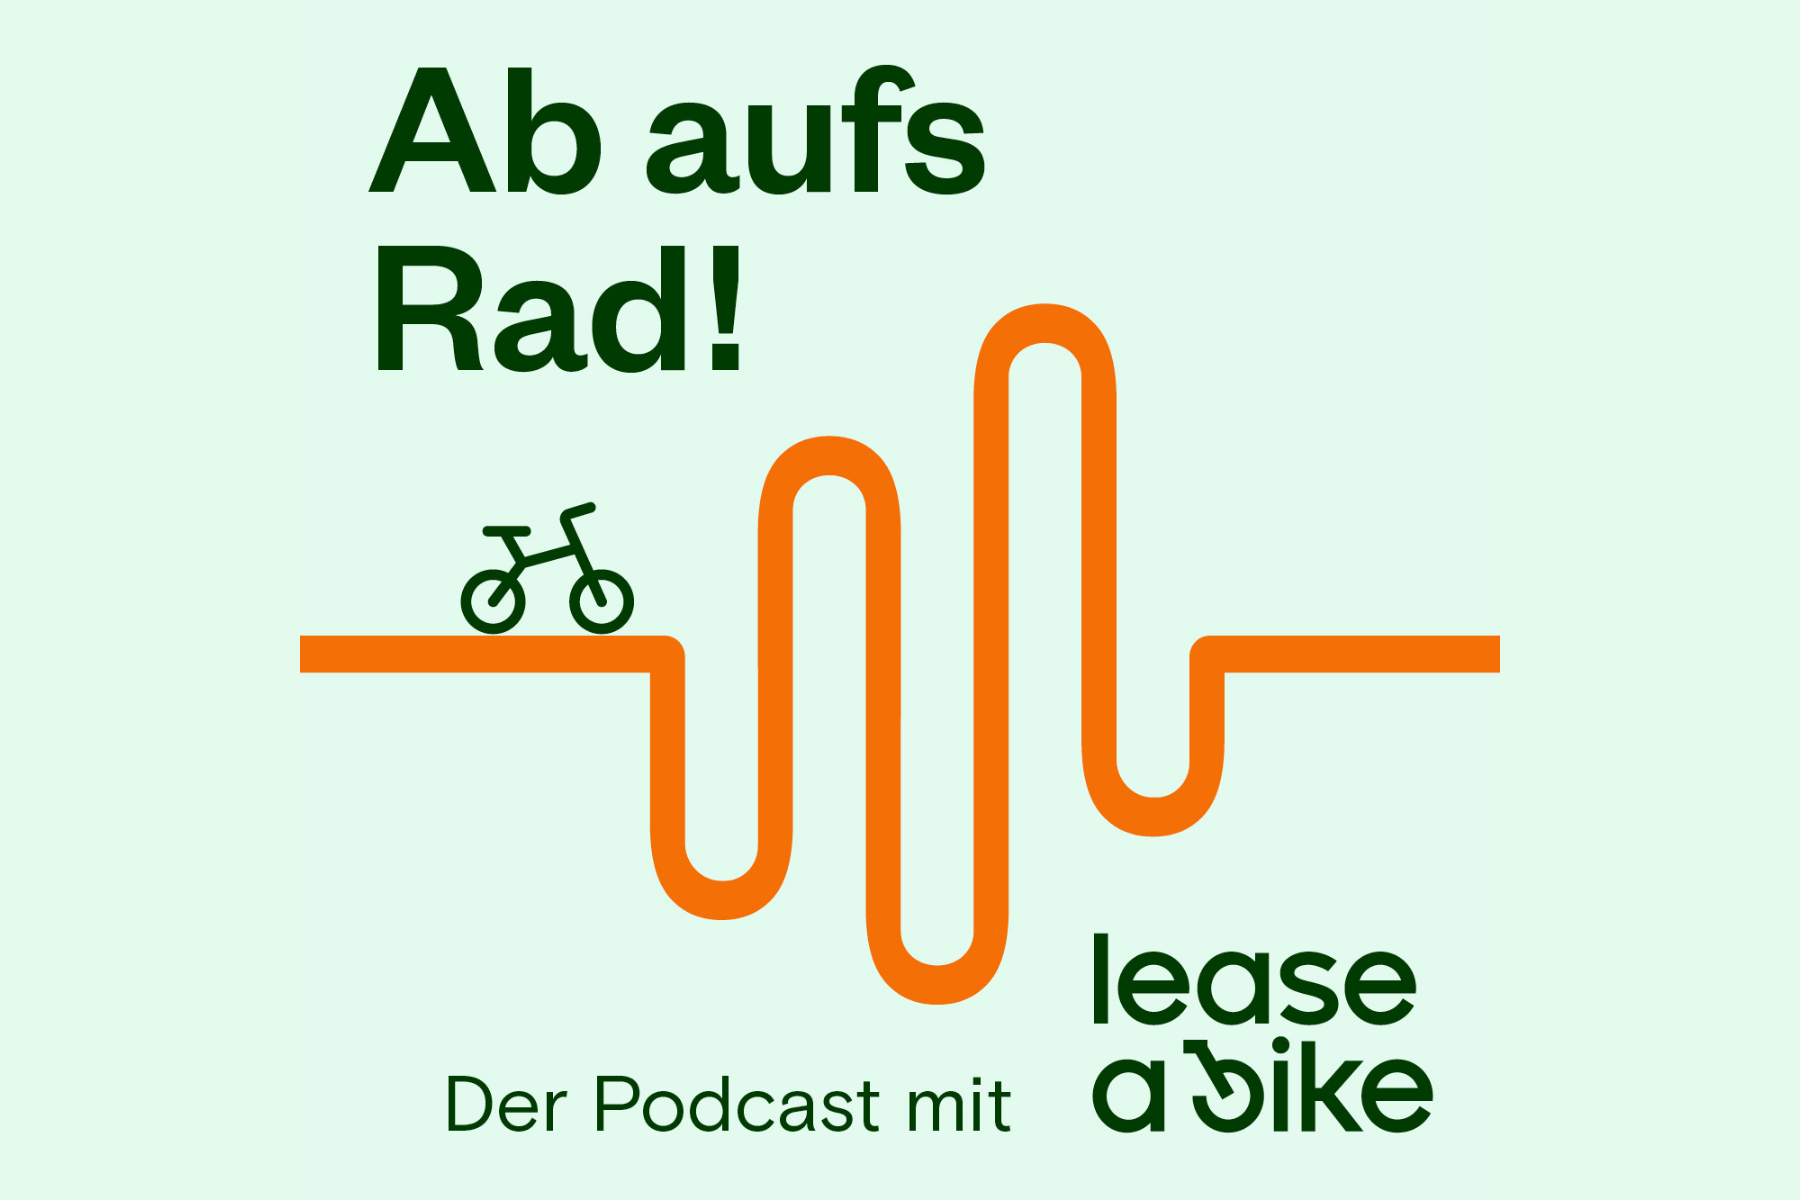 Lease a Bike bringt eigene Podcast-Reihe raus